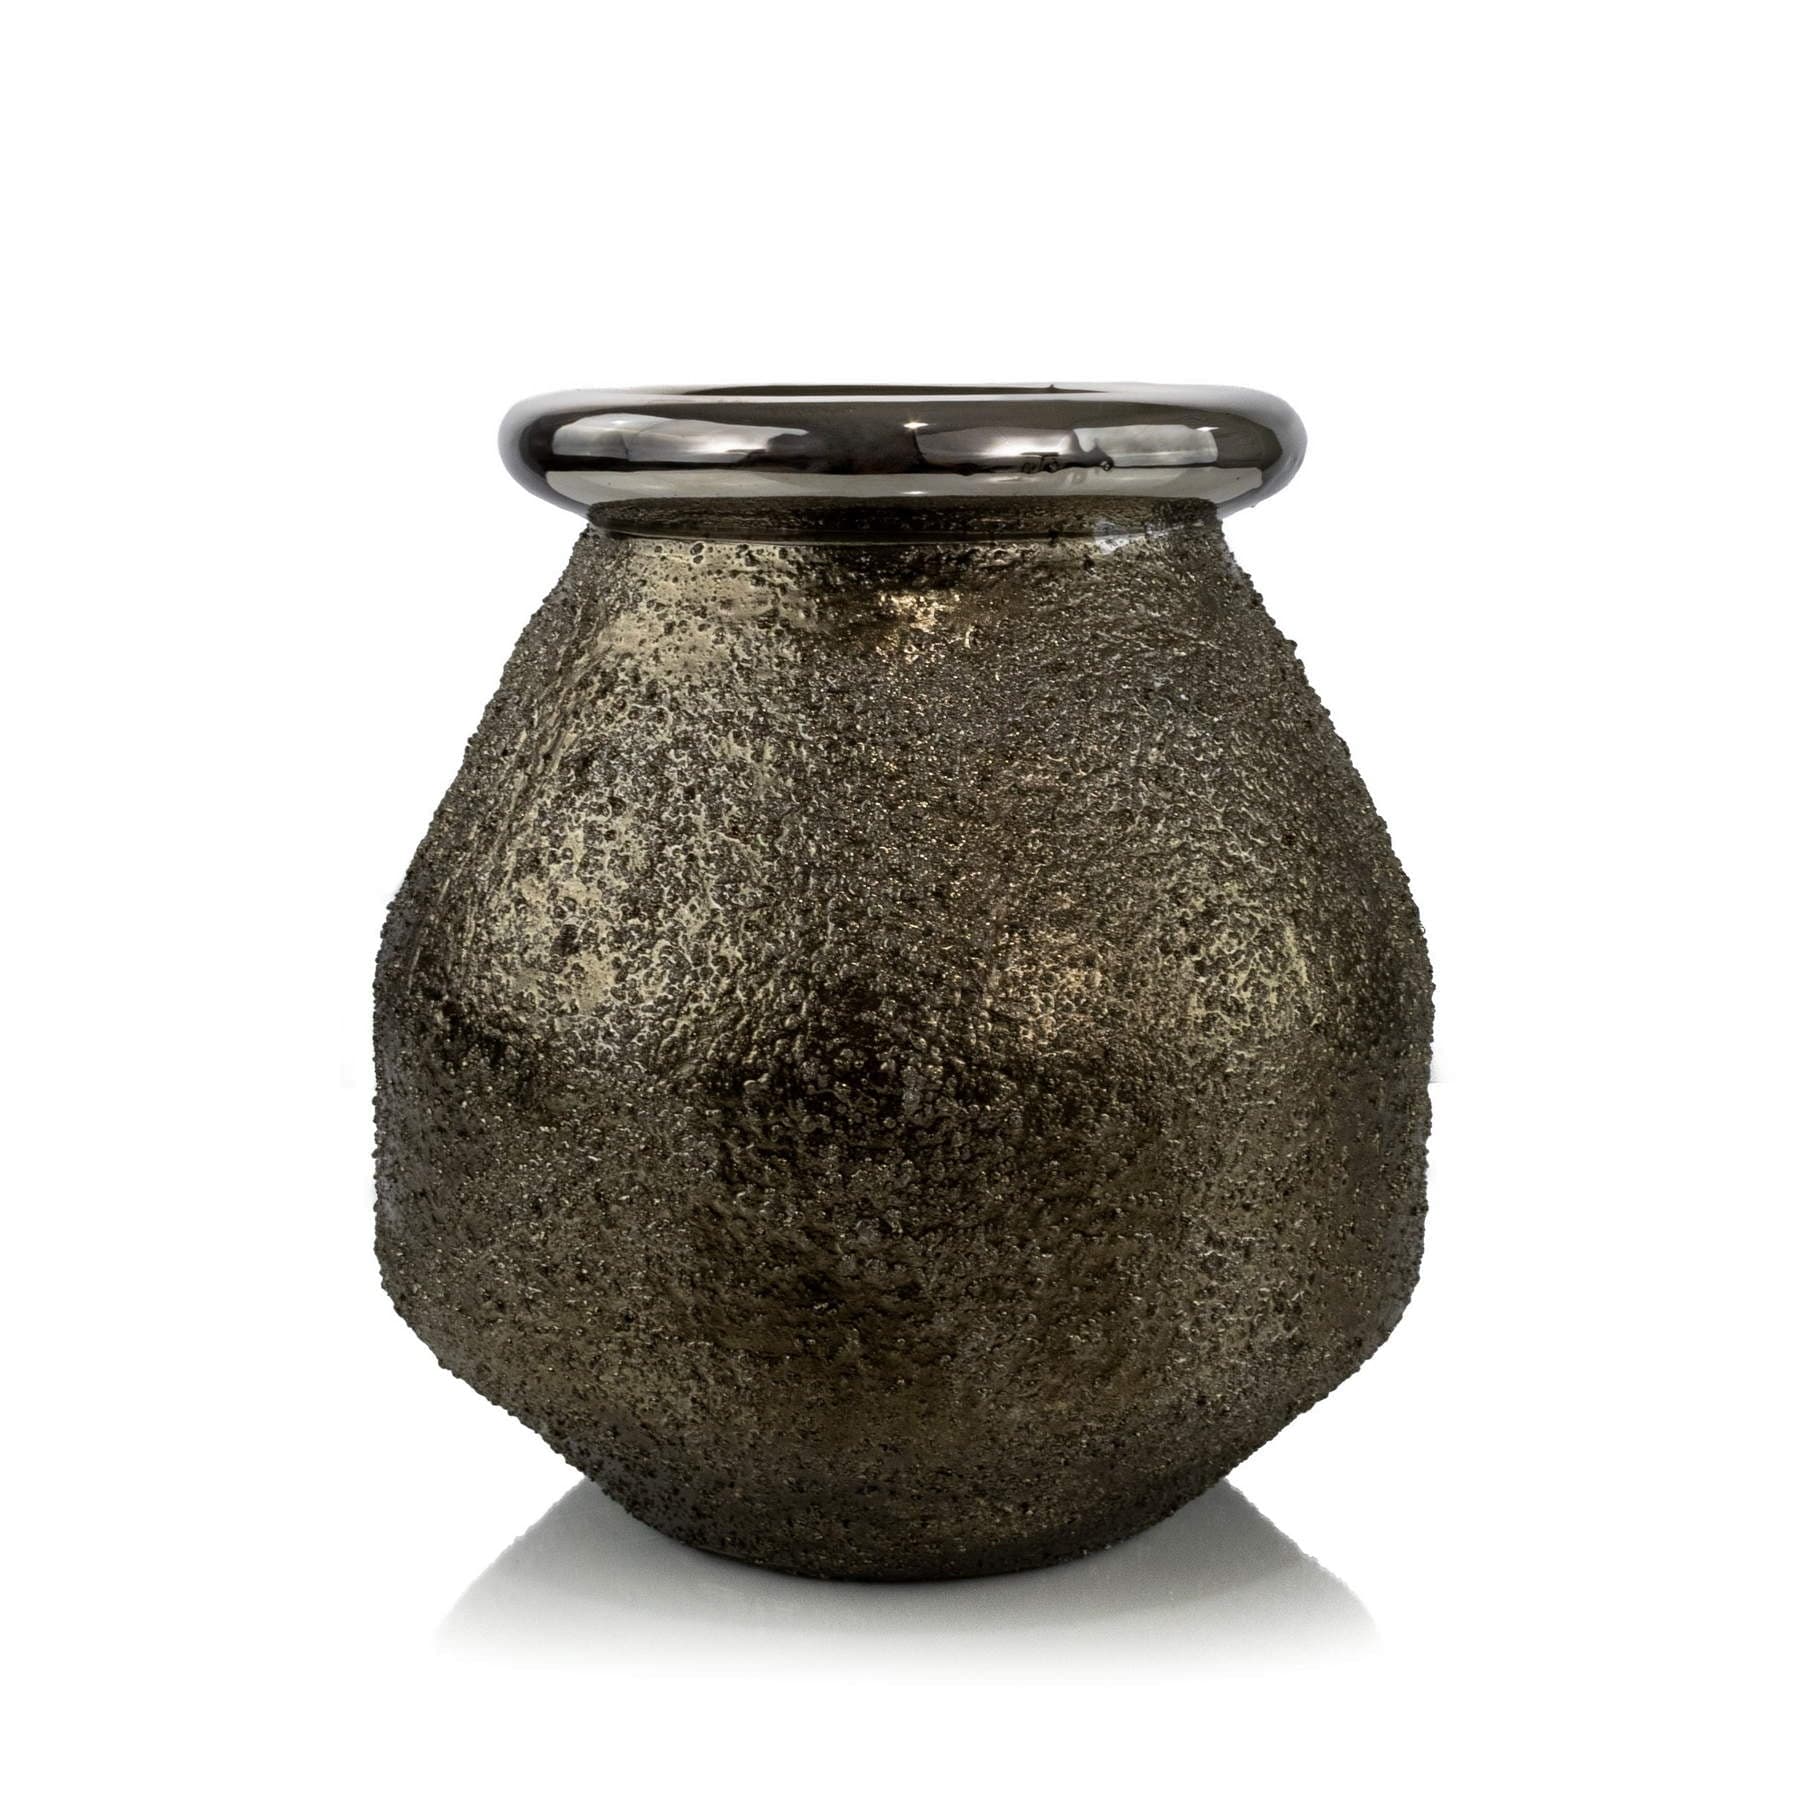 Textured Ceramic Bud Vase Elevate Home Decor - Vases